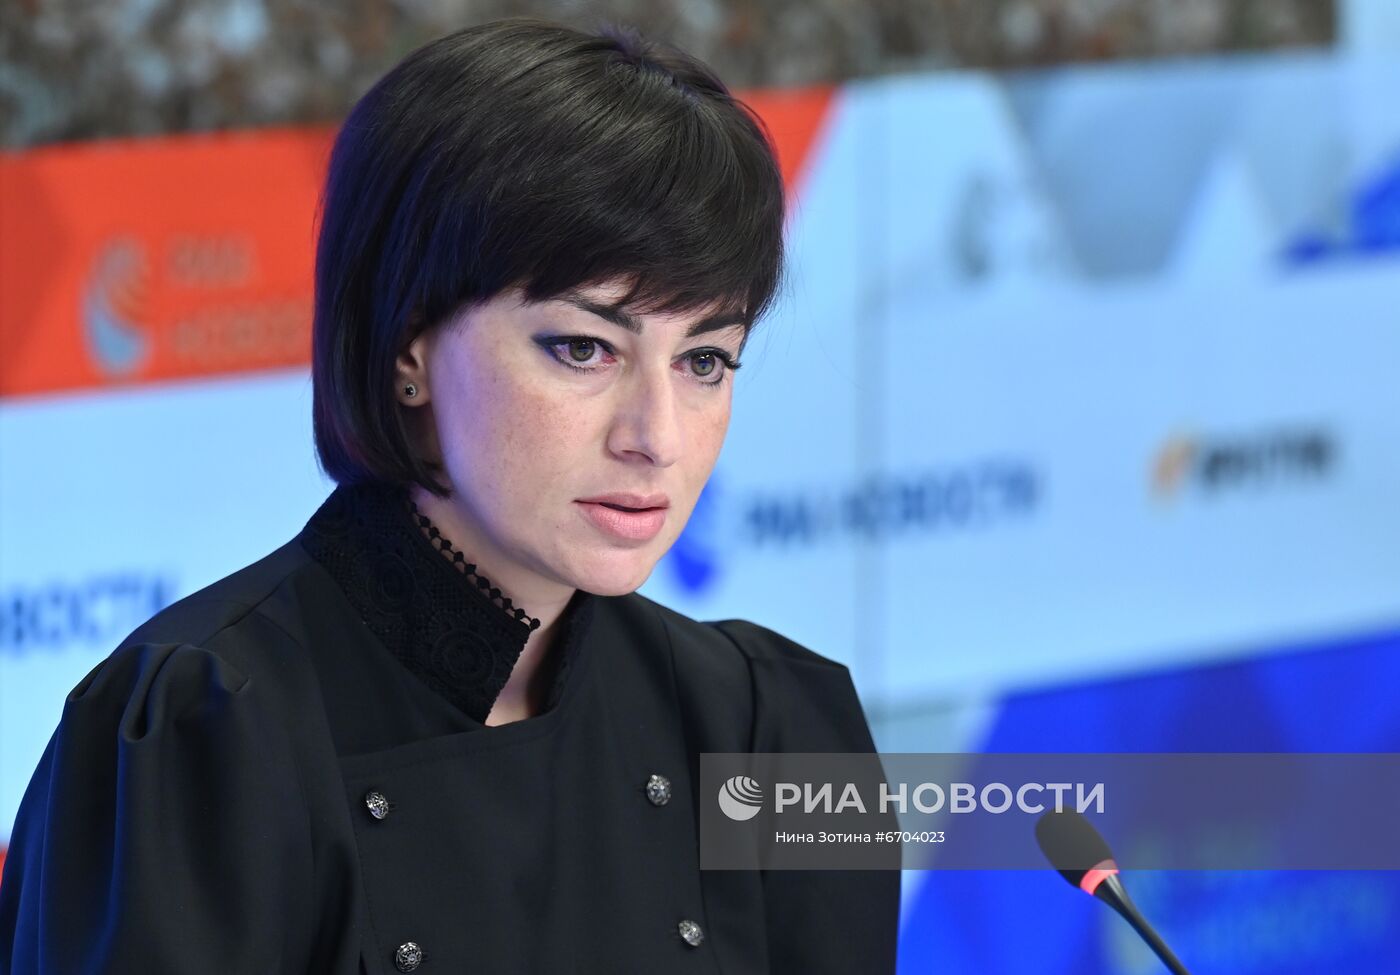 Онлайн-конференция на тему: "Опаленная память Донбасса: военные преступления украинской армии и новые данные о массовых убийствах гражданского населения"